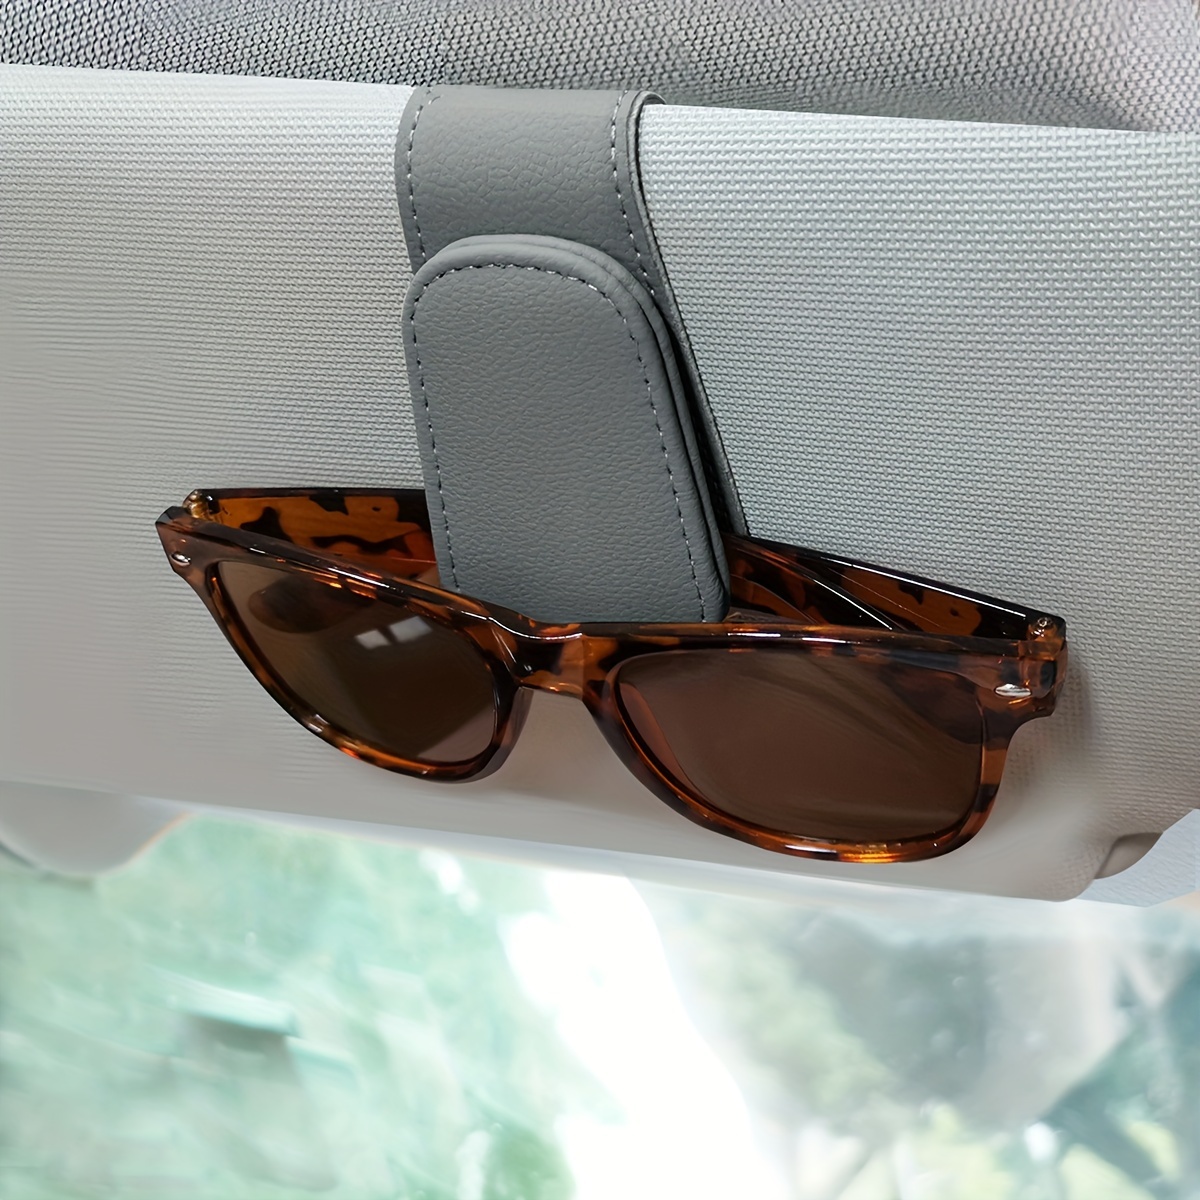 2Pcs Brillenhalter für Auto Sonnenblende Sonnenbrillenhalter Clip  Doppel-Enden Brillenhalter Clip Aufhänger Ticket Card Clip Halter mit 180  Grad